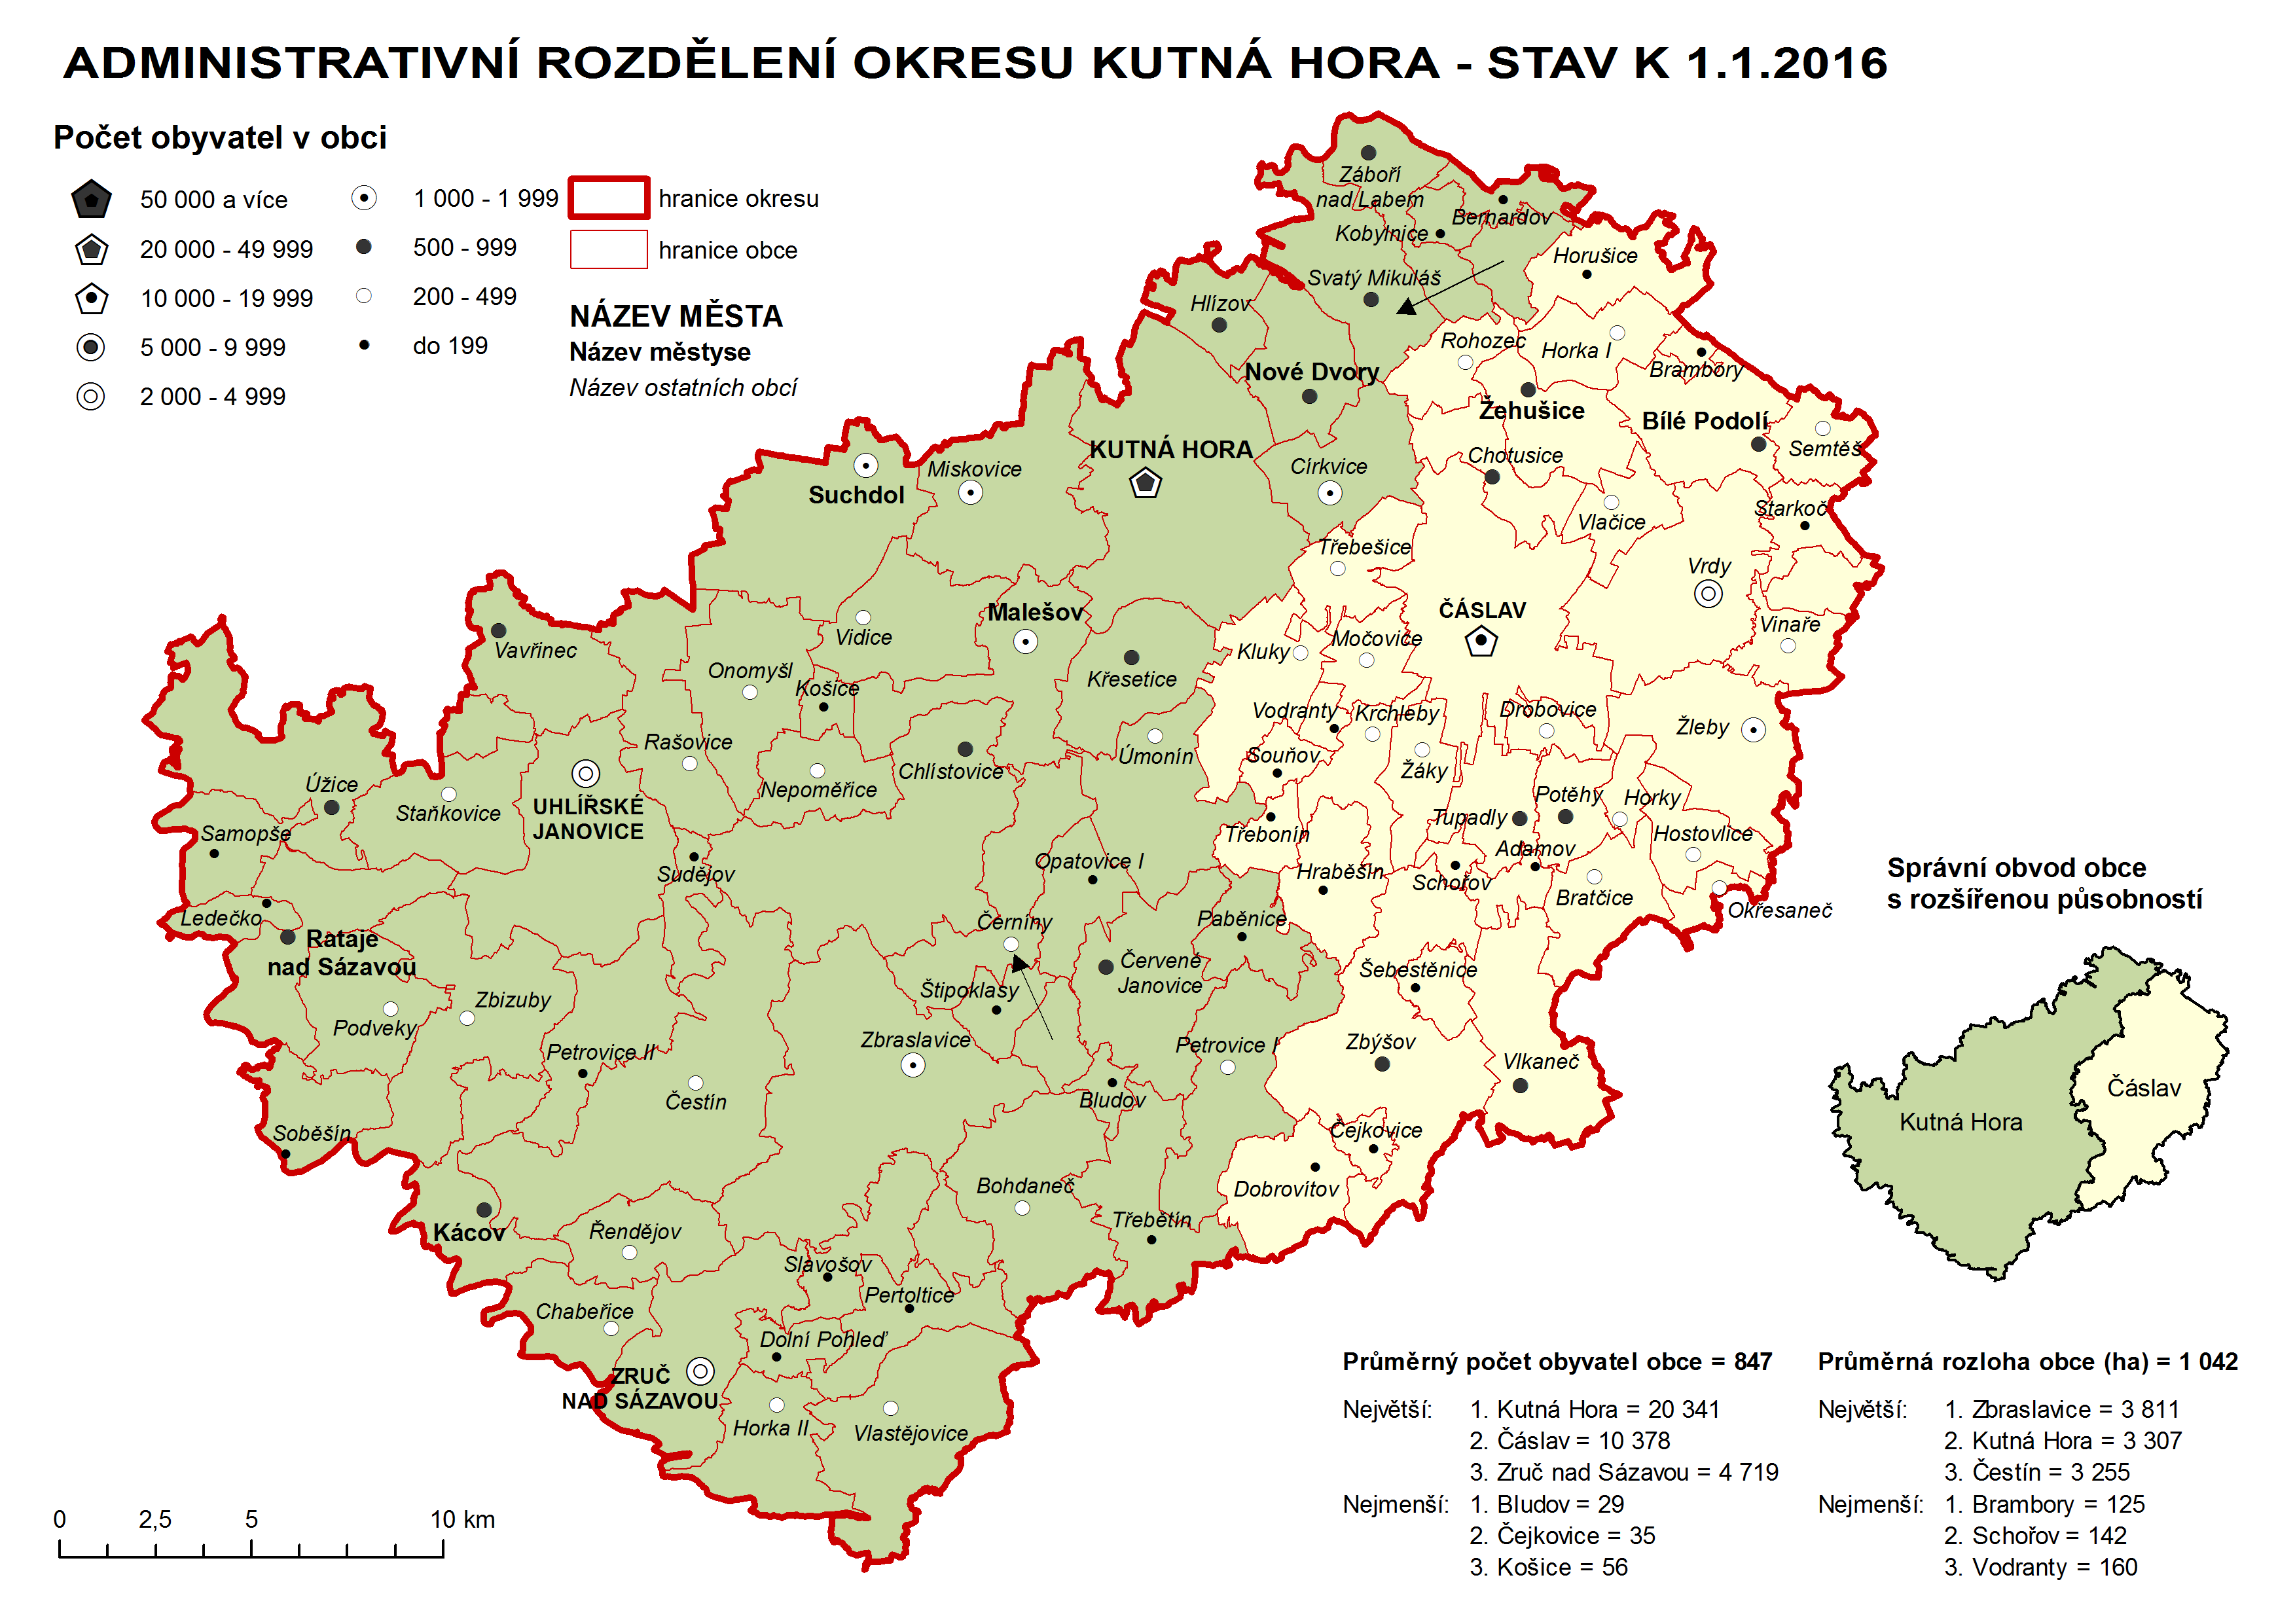 Administrativni rozdělení okresu Kutná Hora - stav k 1.1.2008